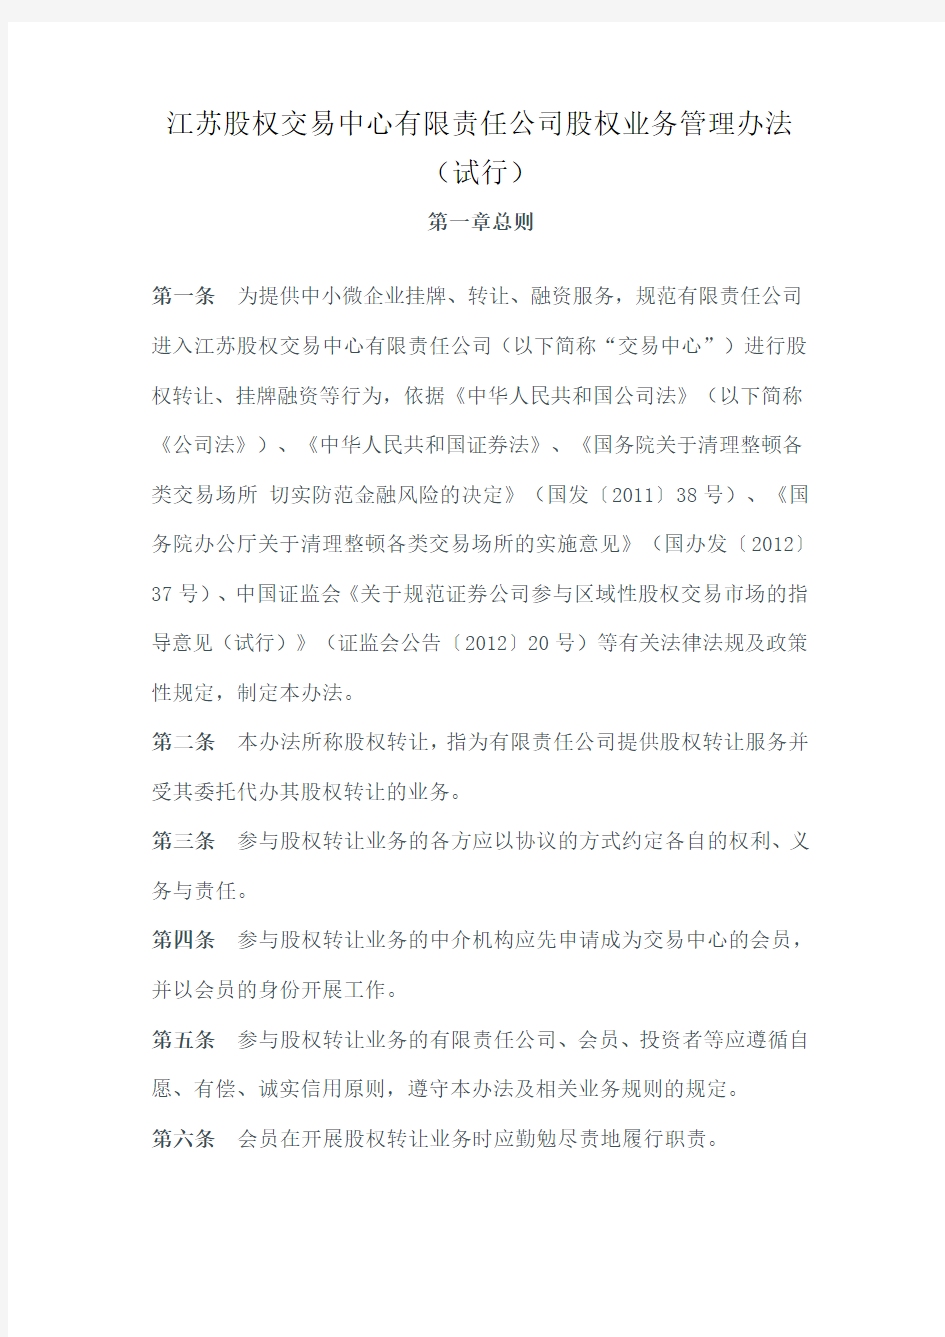 江苏股权交易中心有限责任公司股权业务管理办法